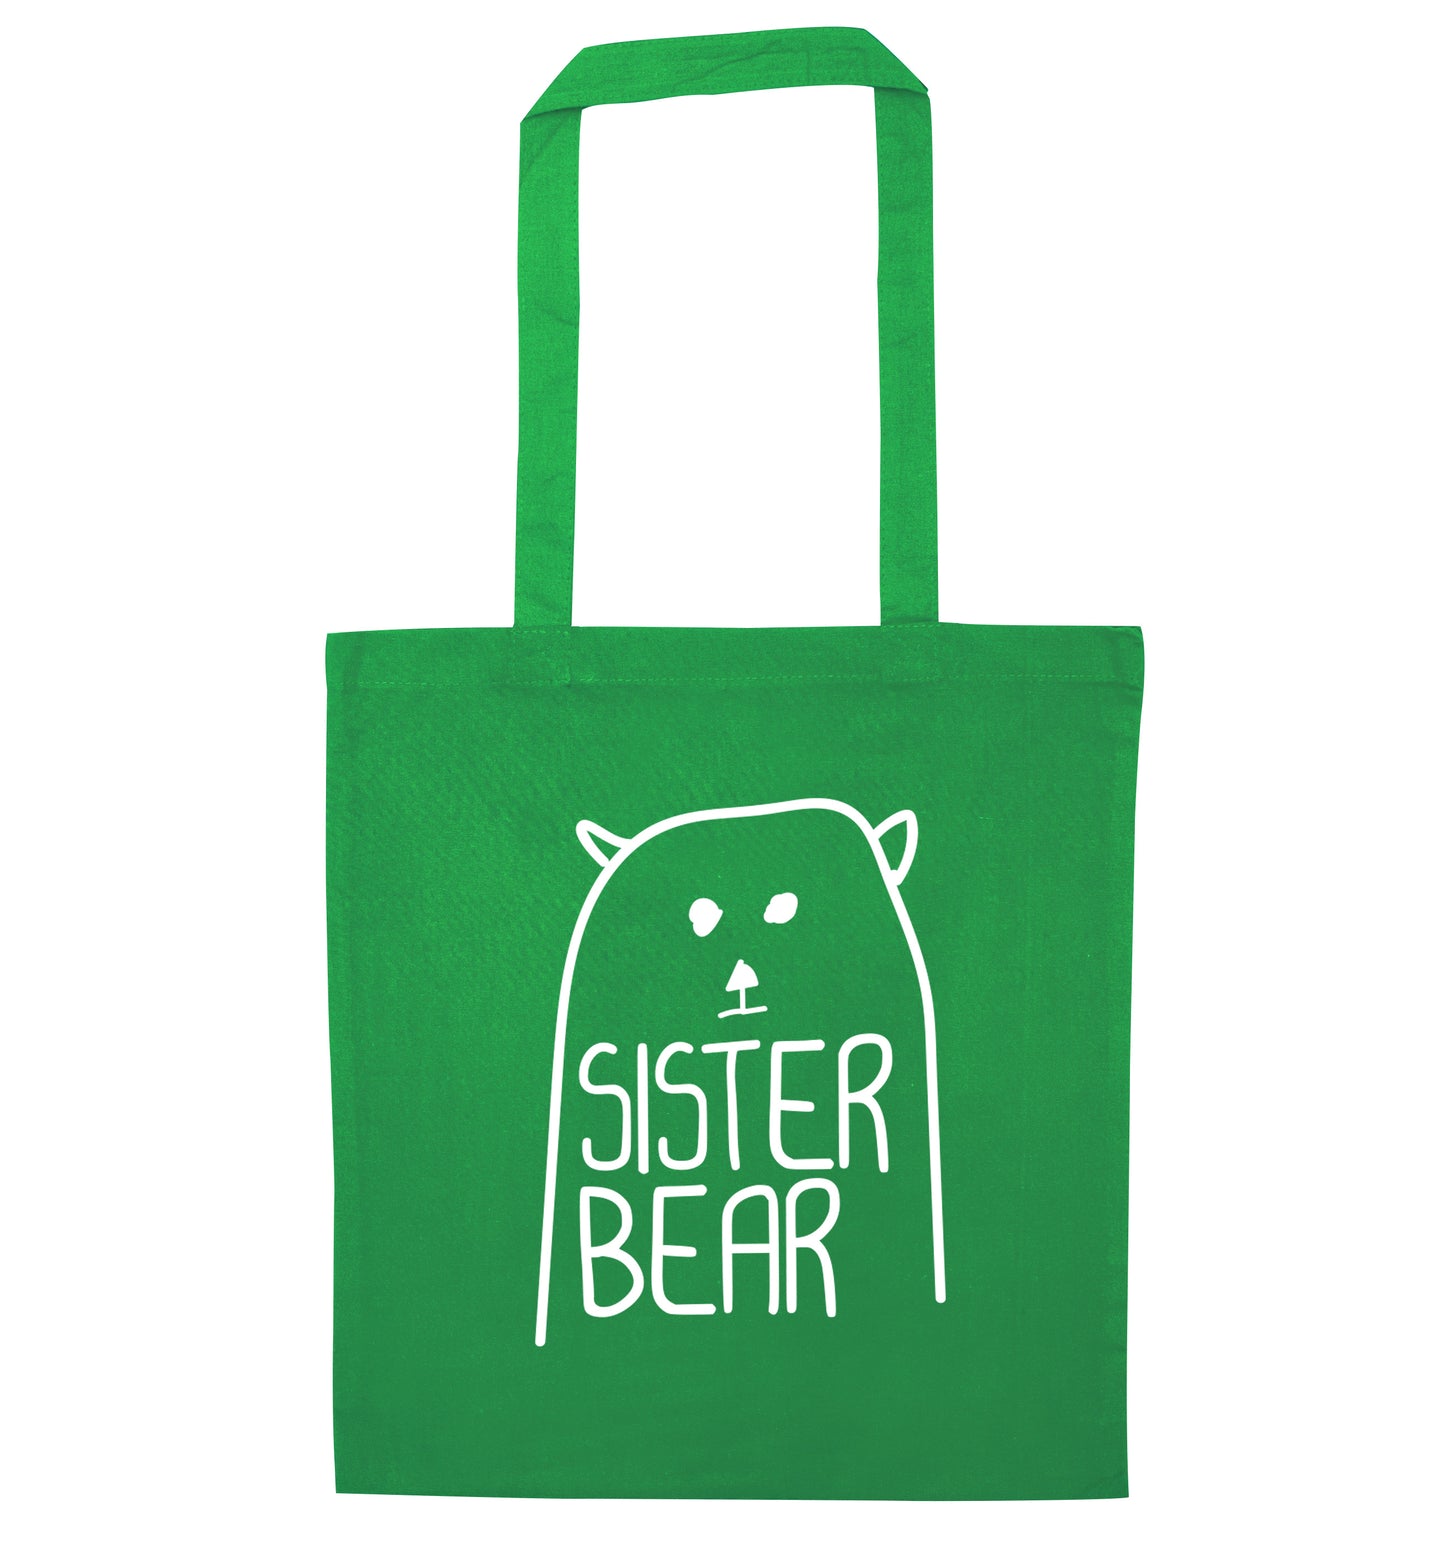 Sister bear green tote bag